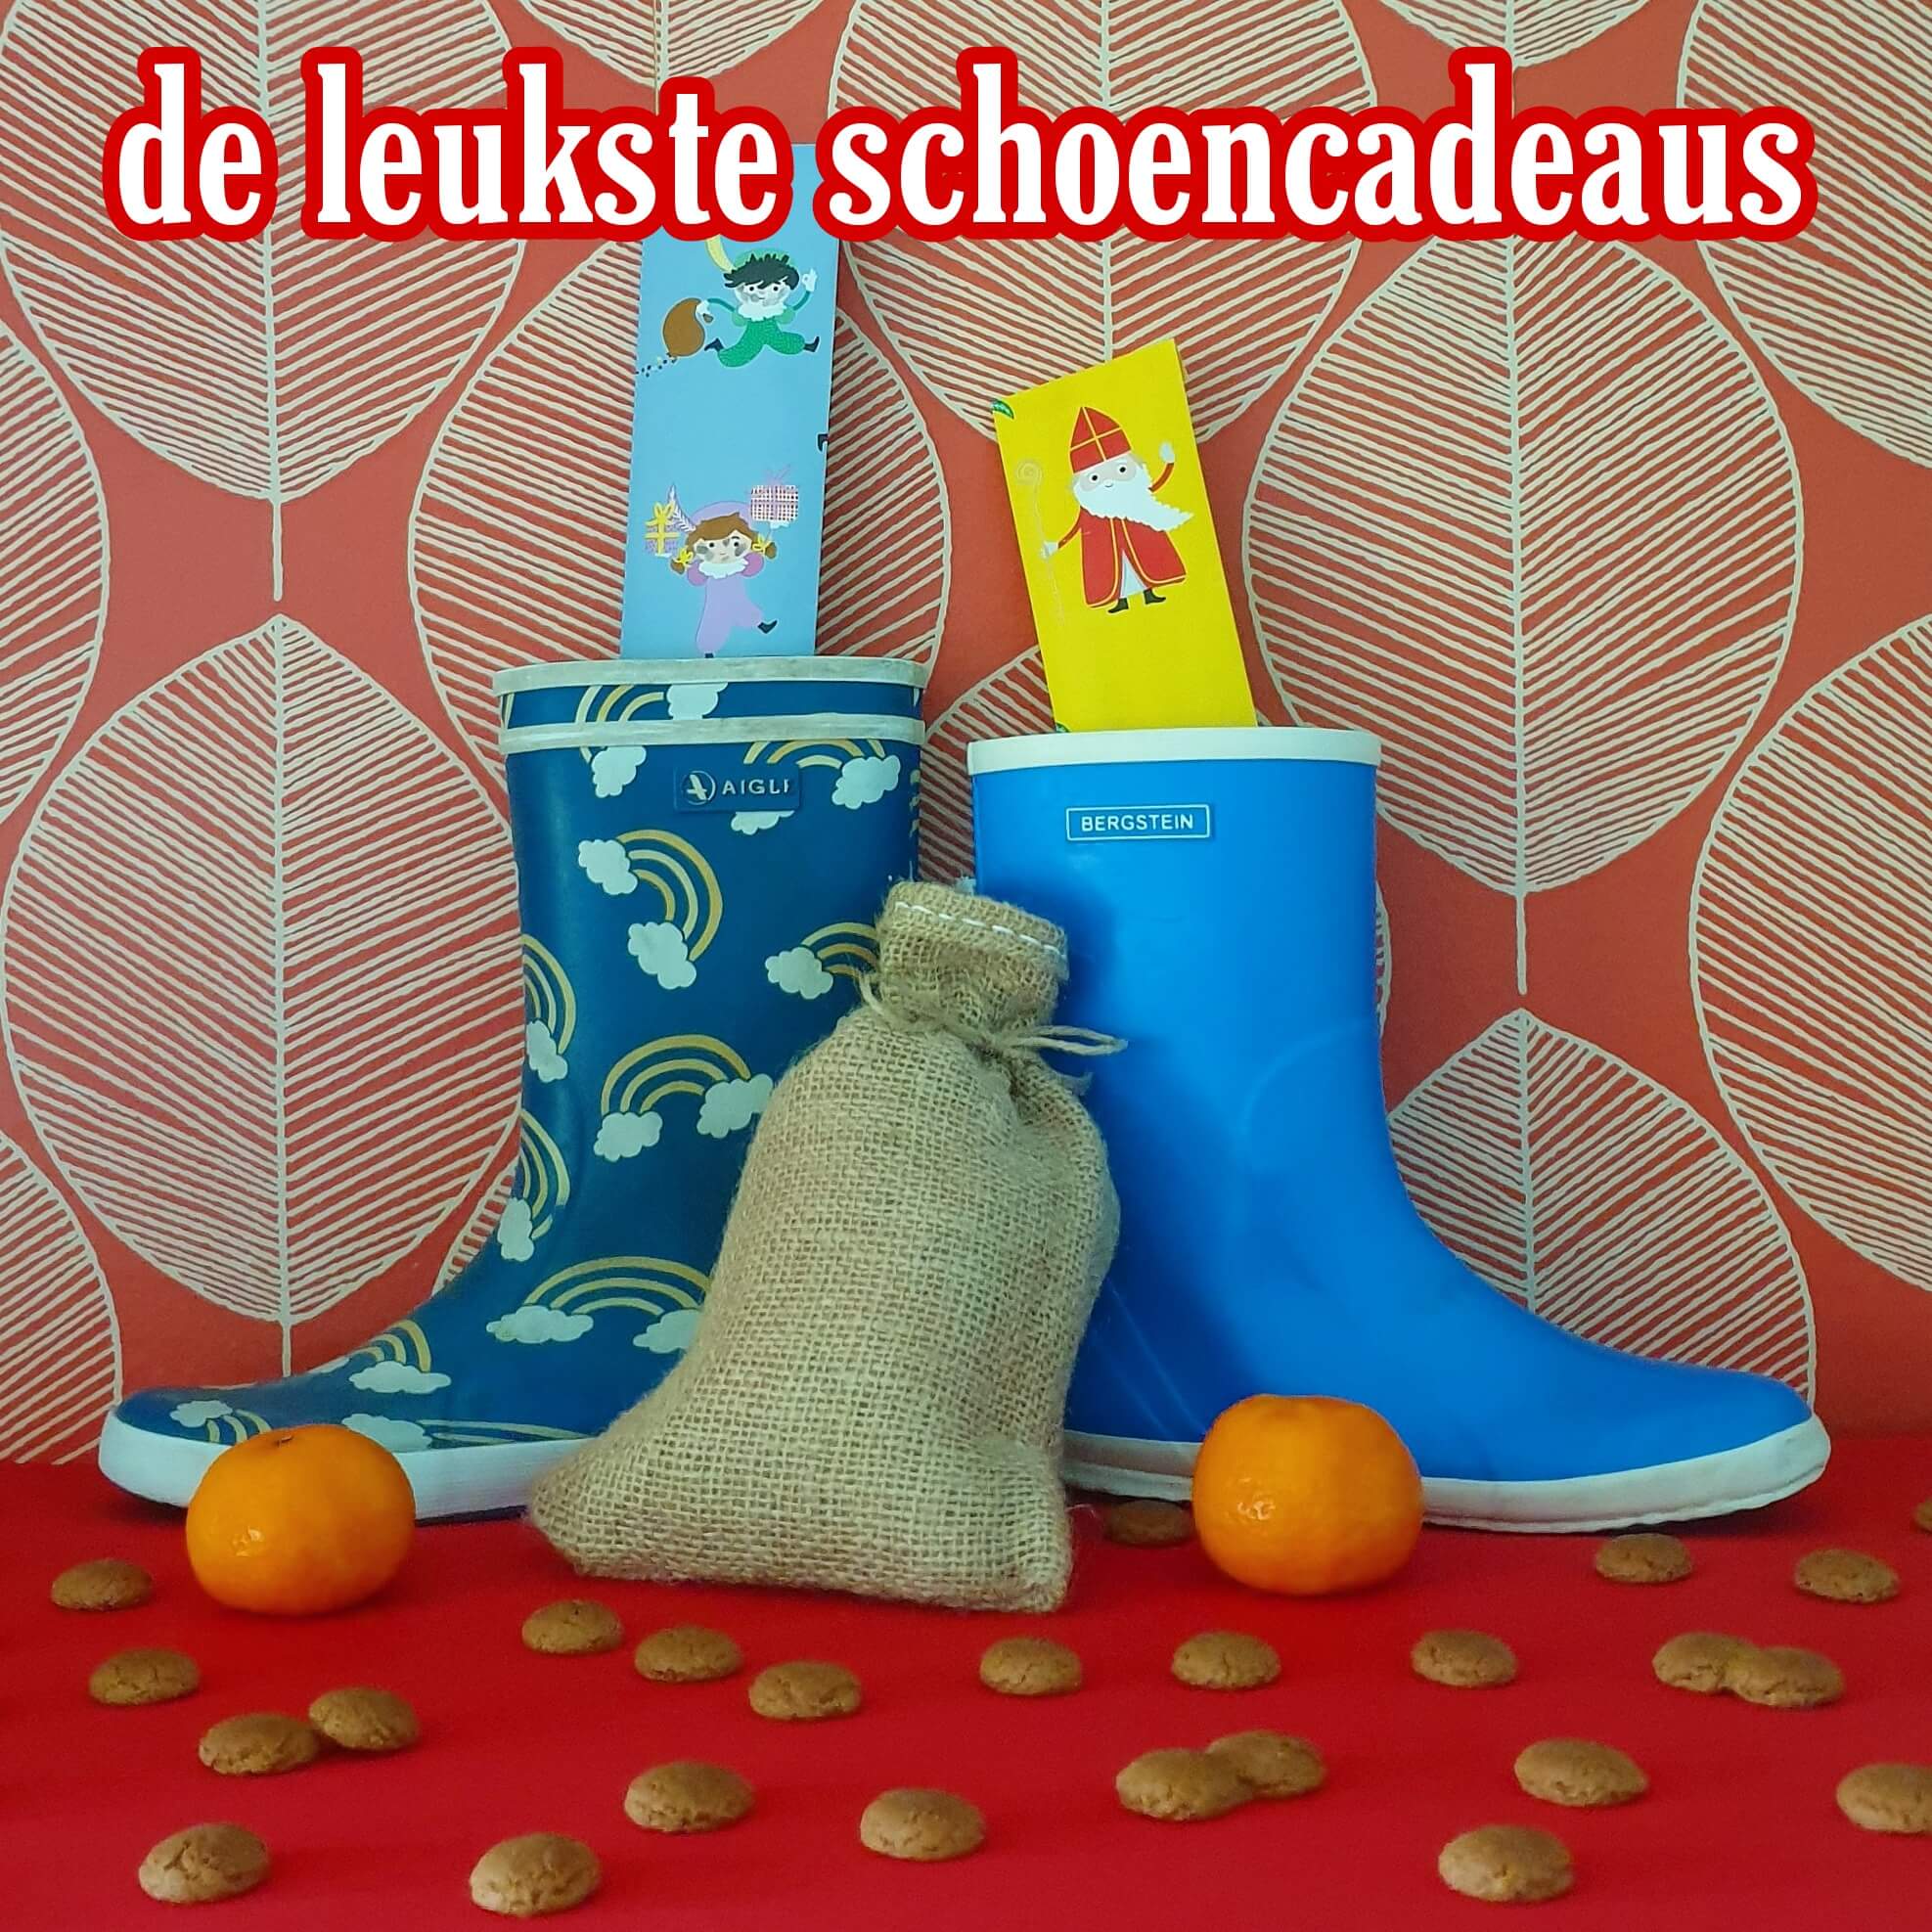 Twee graden Mart verstoring De favoriete schoencadeaus van Sinterklaas - Leuk met kids Leuk met kids